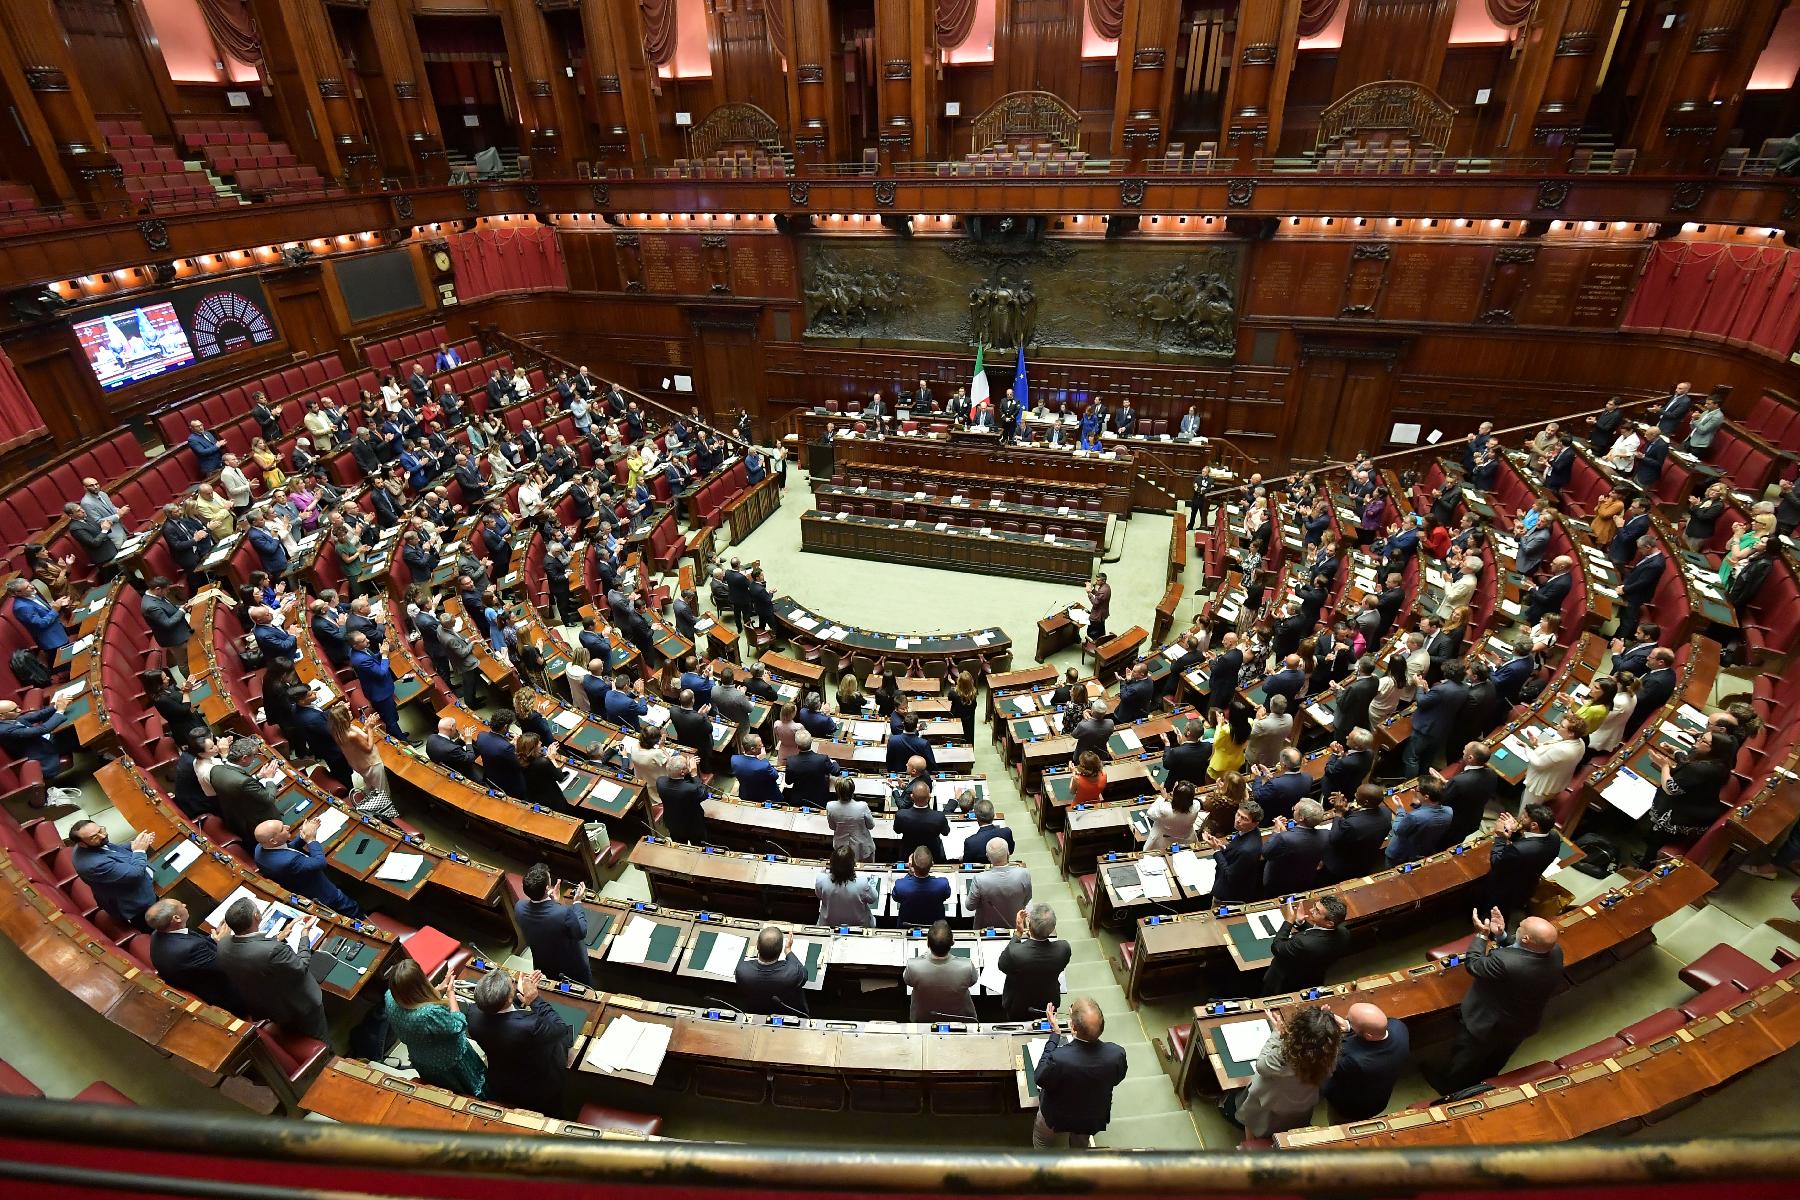 Il Presidente ha commemorato le vittime delle strage di Bologna e l'Assemblea ha osservato un minuto di silenzio.